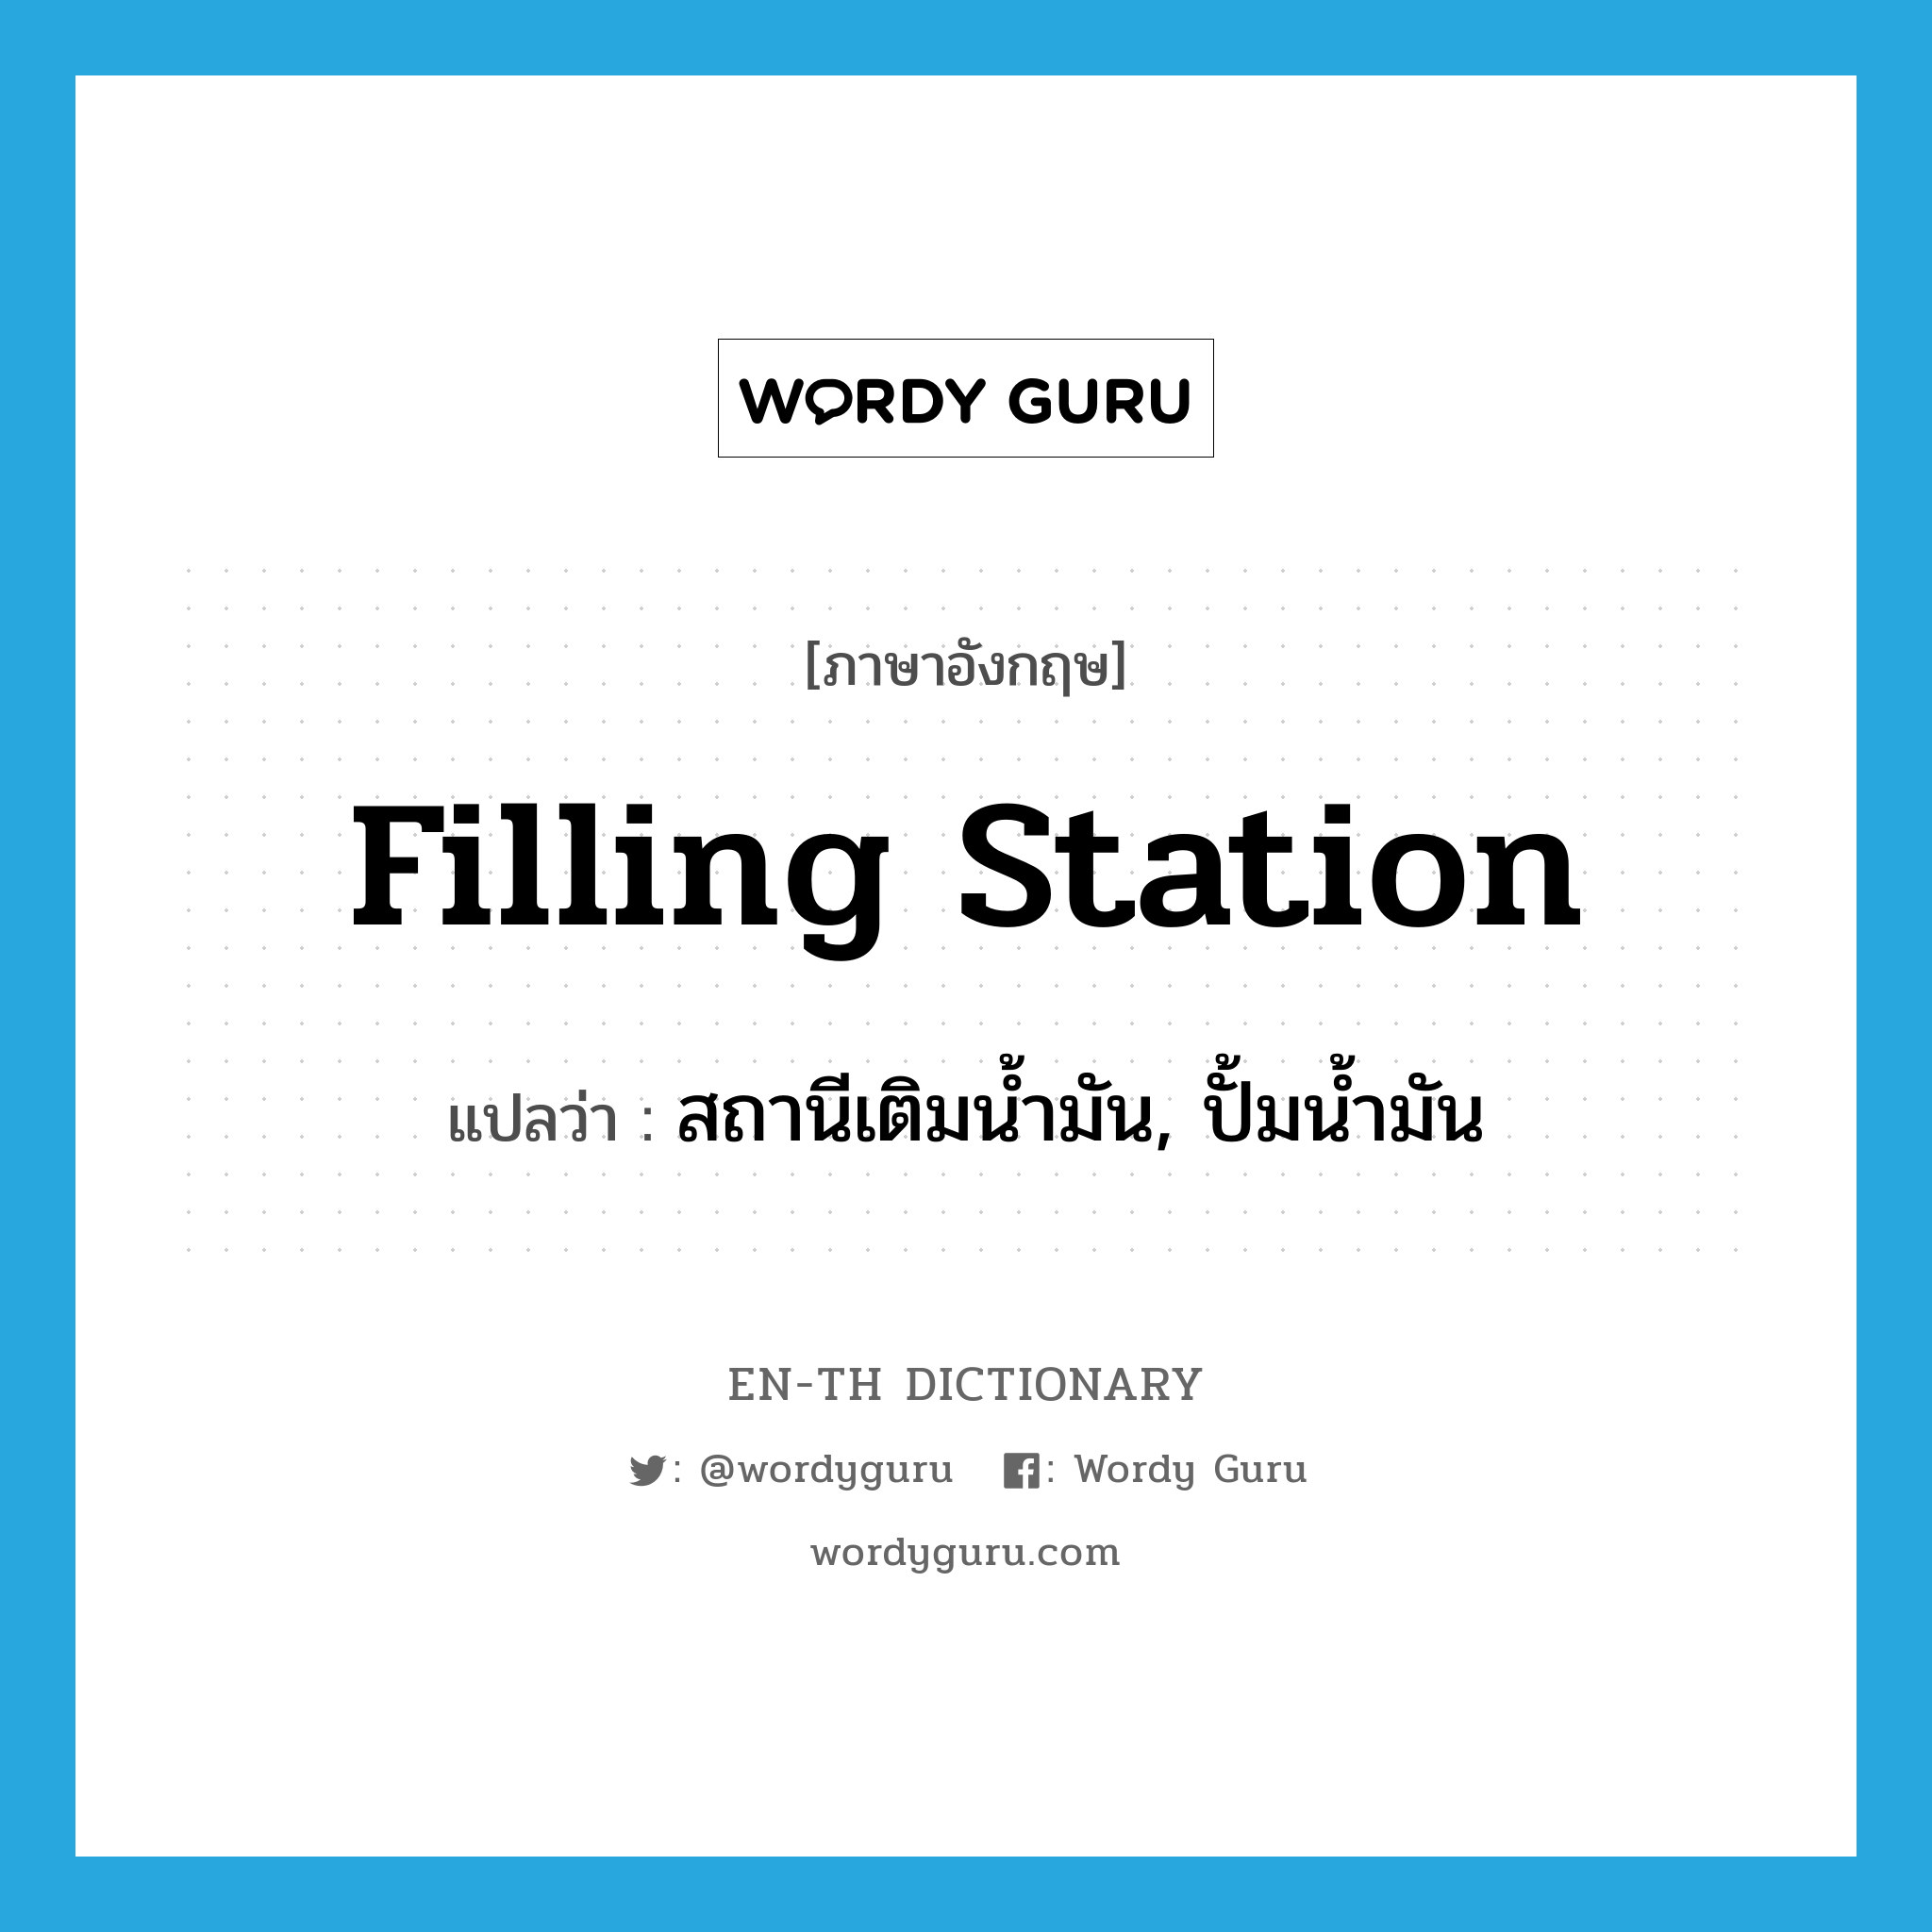 filling station แปลว่า?, คำศัพท์ภาษาอังกฤษ filling station แปลว่า สถานีเติมน้ำมัน, ปั้มน้ำมัน ประเภท N หมวด N